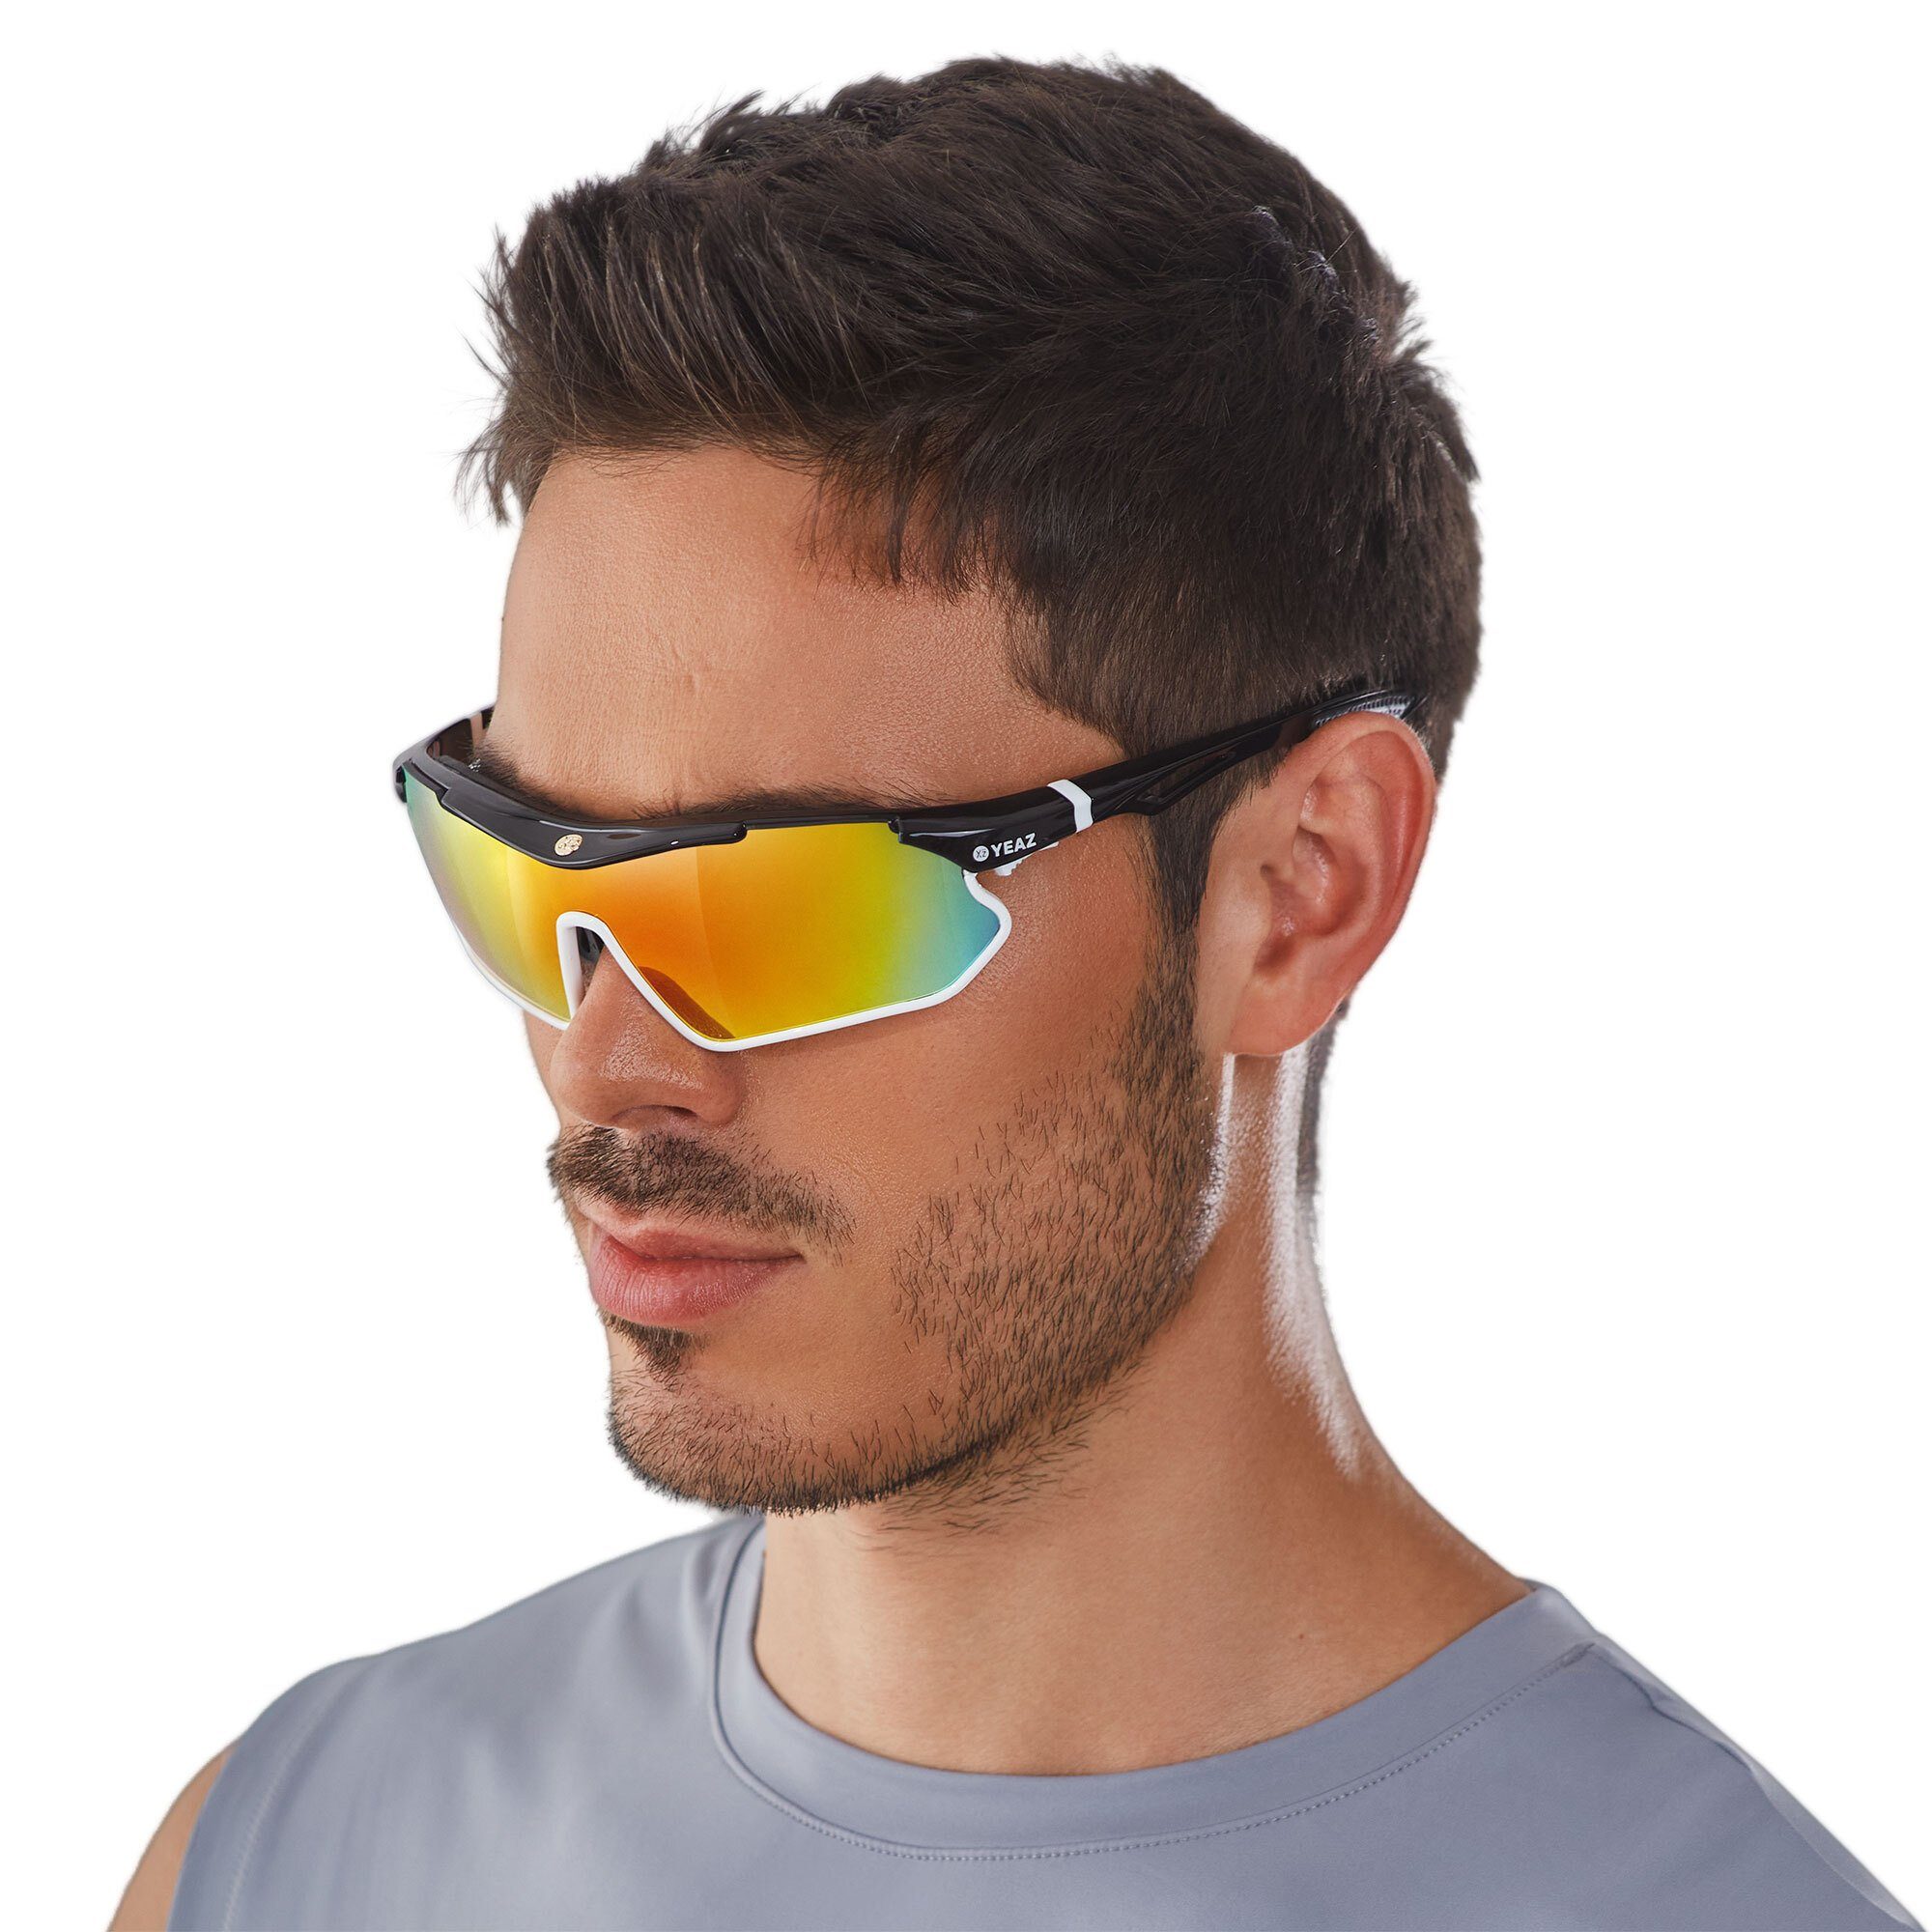 YEAZ Sportbrille SUNRAY sport-sonnenbrille schwarz/weiß/rot, Sport-Sonnenbrille schwarz/weiß/rot